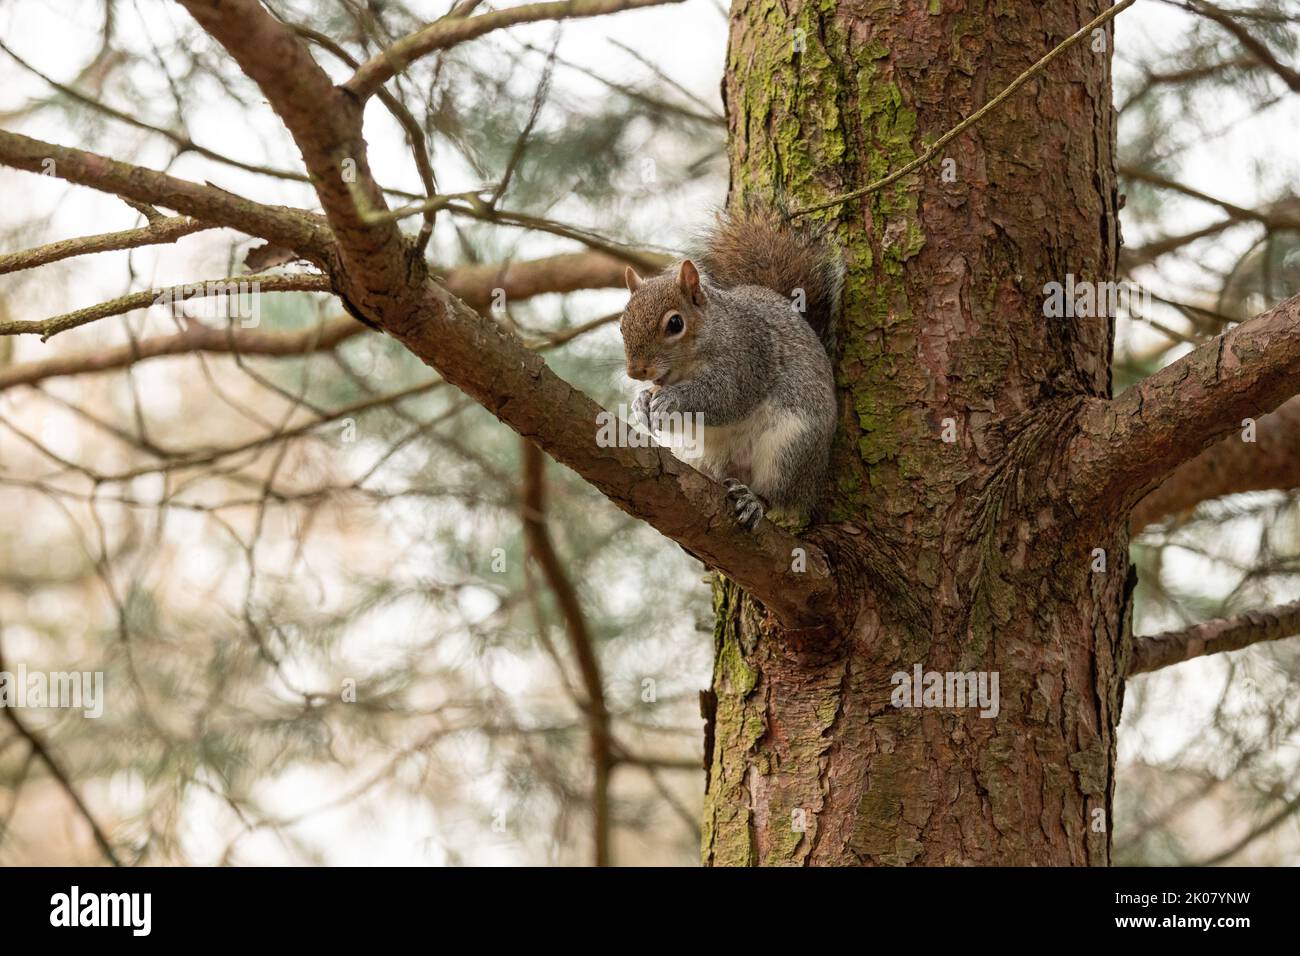 Ardilla gris británica sentada en un árbol mirando la cámara, en un entorno natural Foto de stock